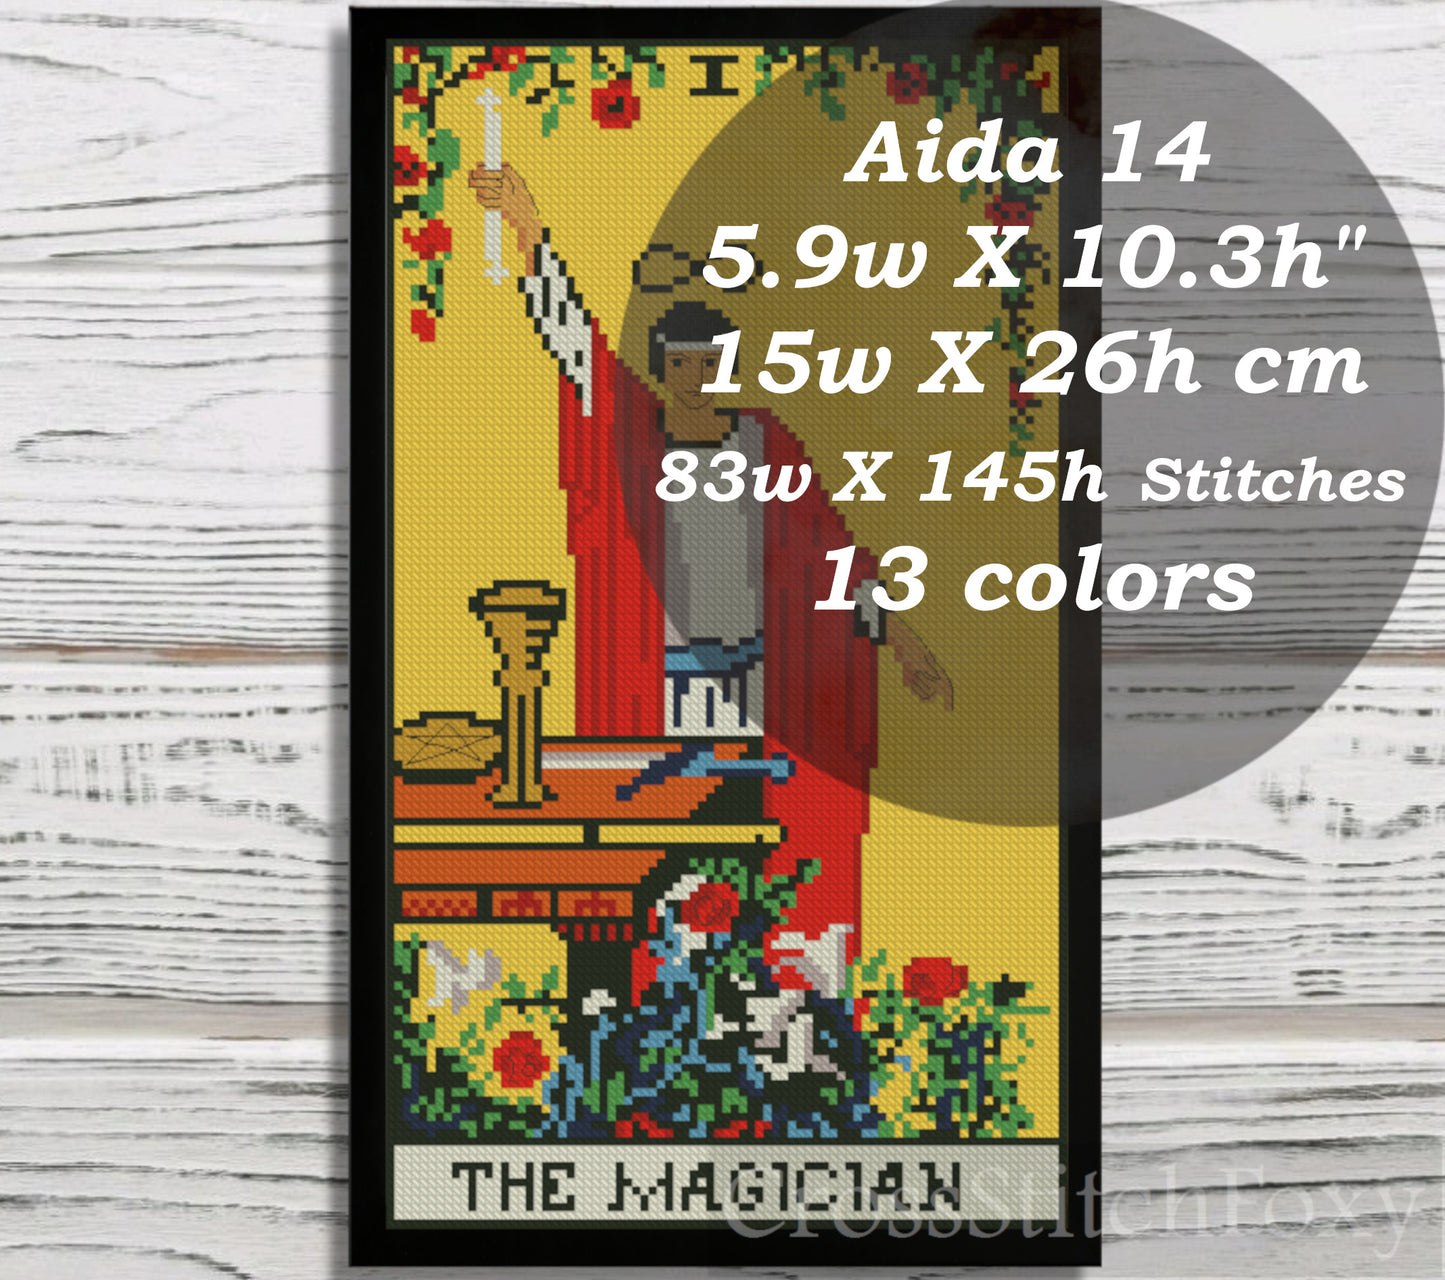 The Magician Tarot Card cross stitch pattern